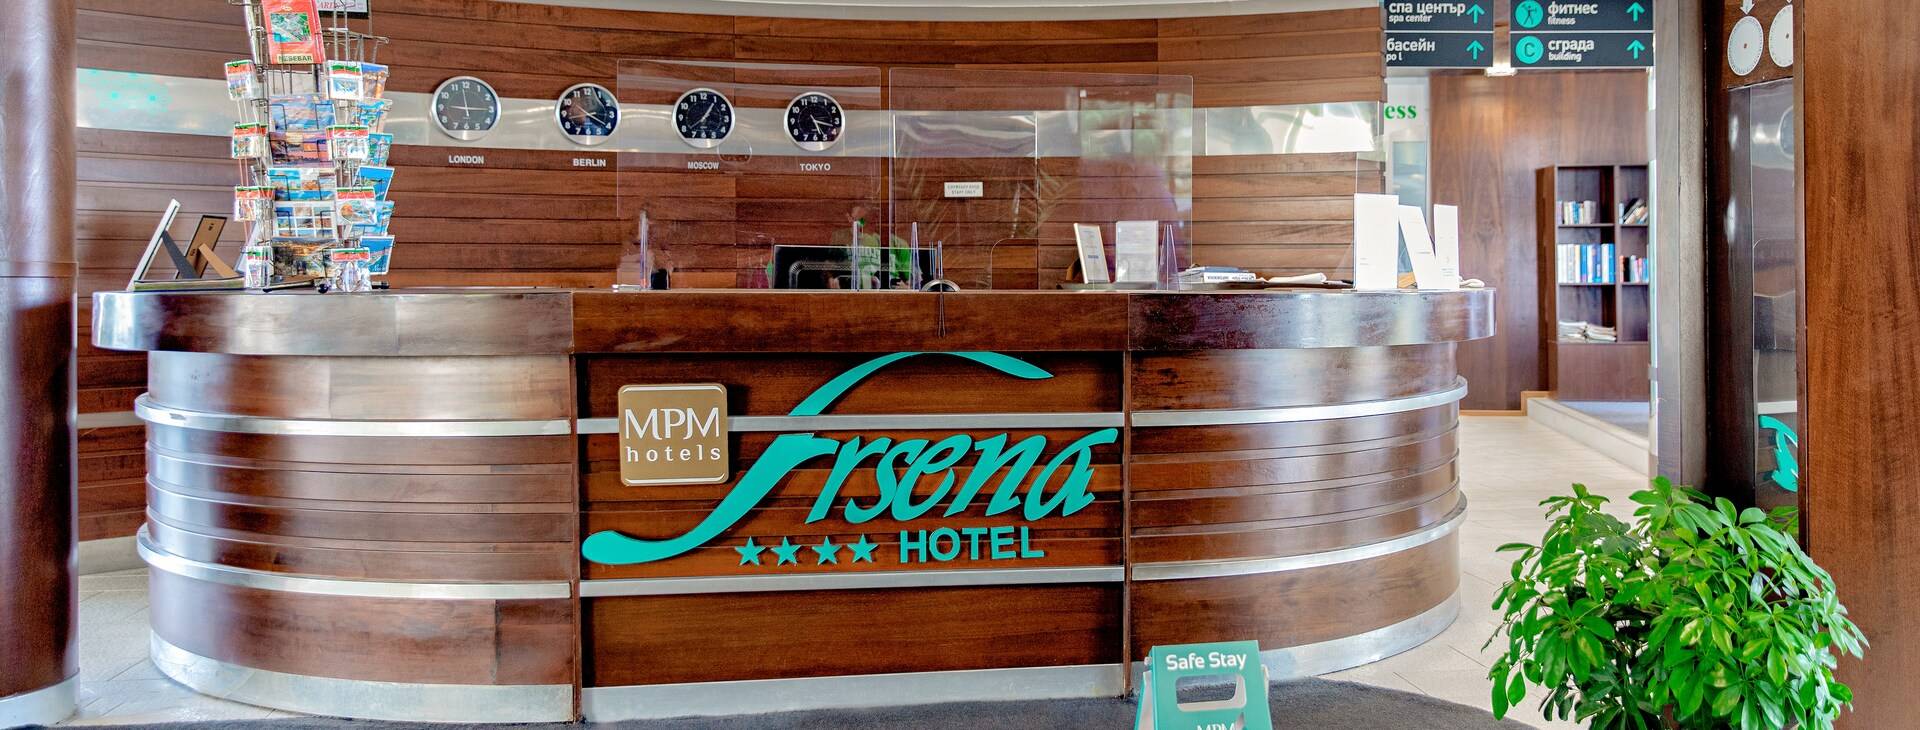 Hotel MPM Arsena Obrázok22